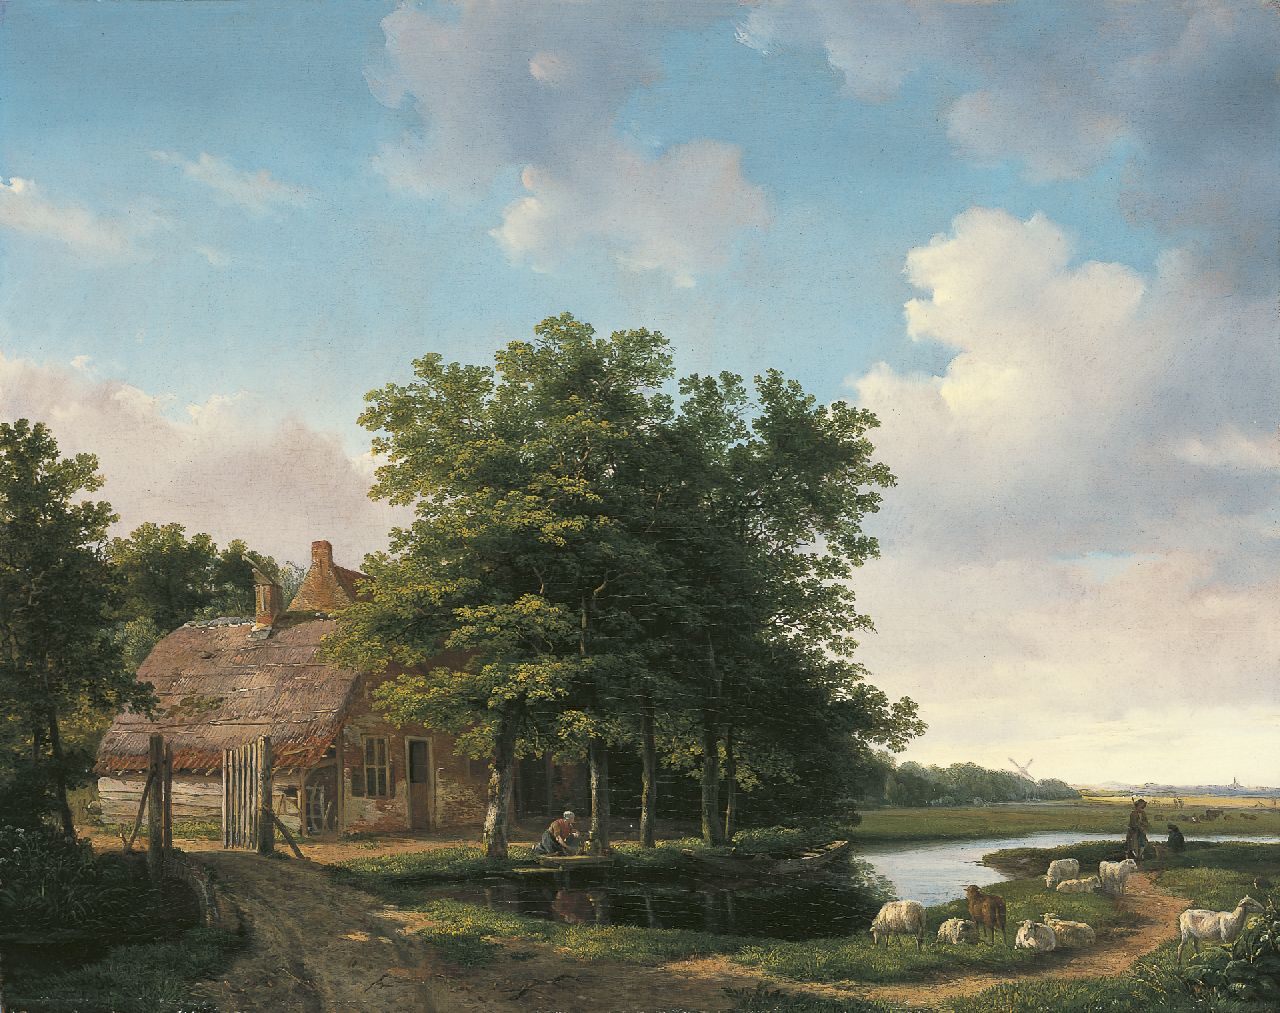 Sande Bakhuyzen H. van de | Hendrikus van de Sande Bakhuyzen, Landschap met boerenhuis, olieverf op paneel 43,0 x 54,4 cm, gesigneerd linksonder en gedateerd '19